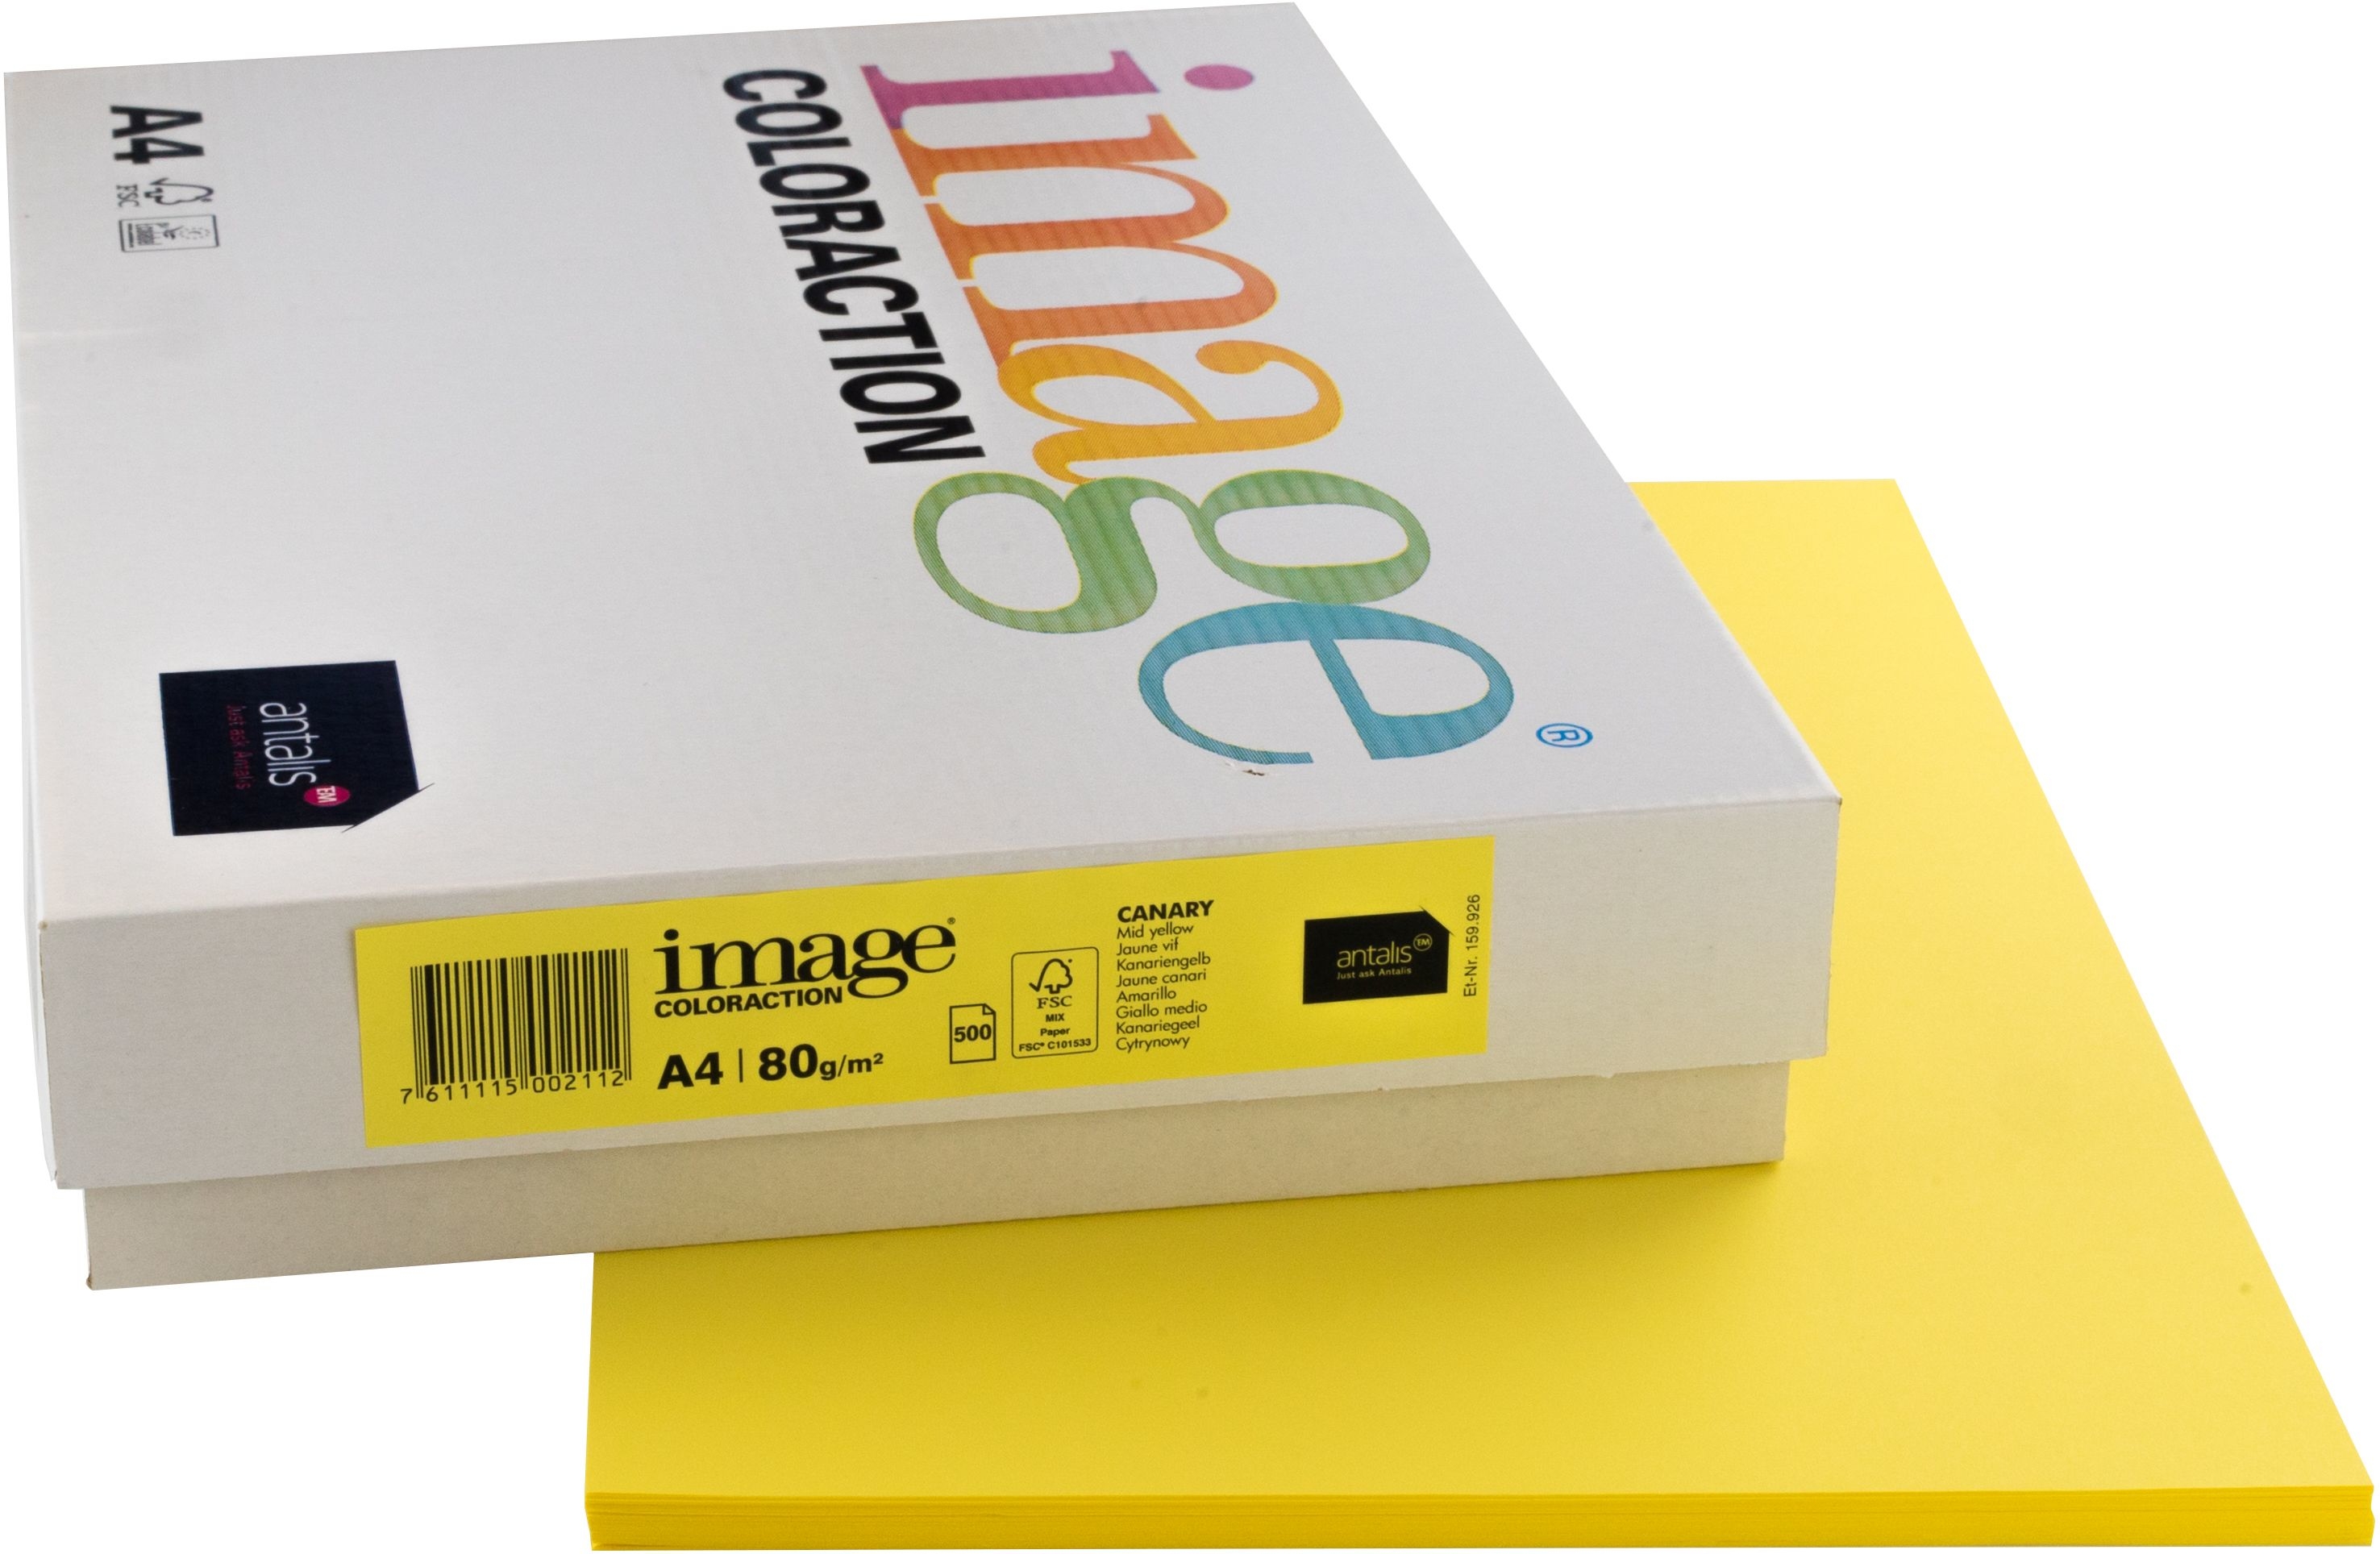 IMAGE COLORACTION Papier à copier Canary A4 274567 jaune, 80g 500 feuilles